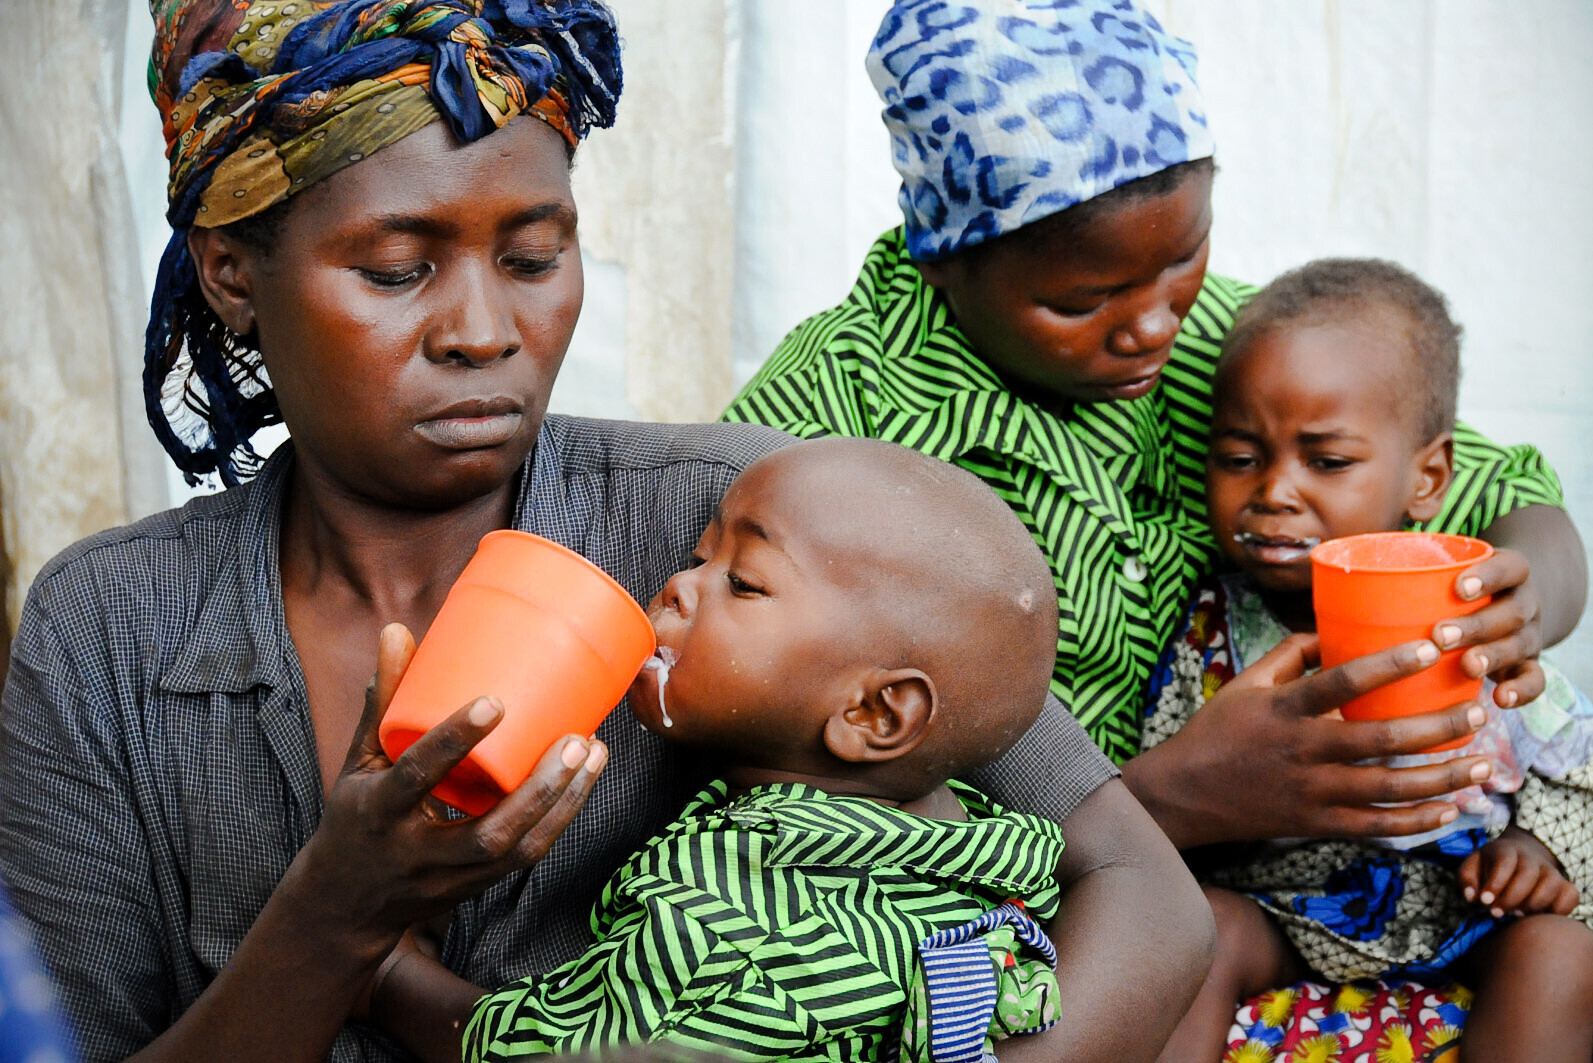 Gerade in Afrika leiden viele Menschen Hunger. Zwei Frauen geben ihren Kindern in einem Versorgungszentrum hochkalorische Nahrung.